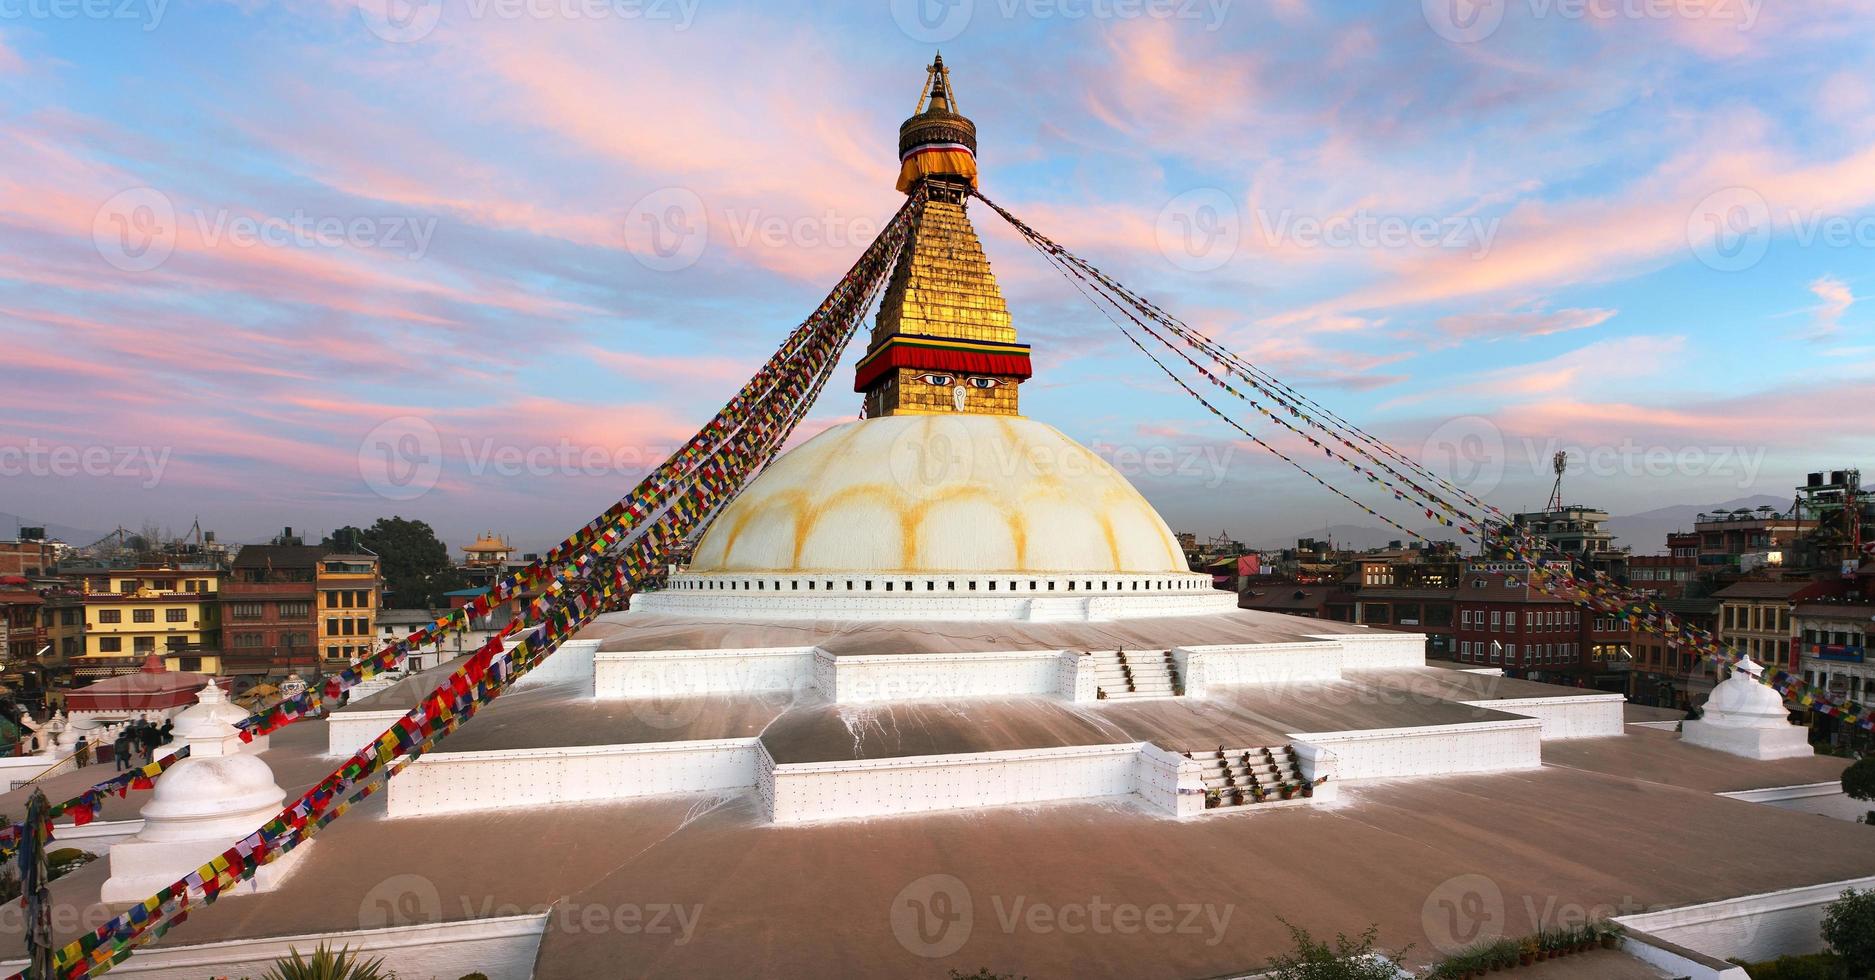 avond uitzicht van bodhnath stupa - kathmandu - nepal foto